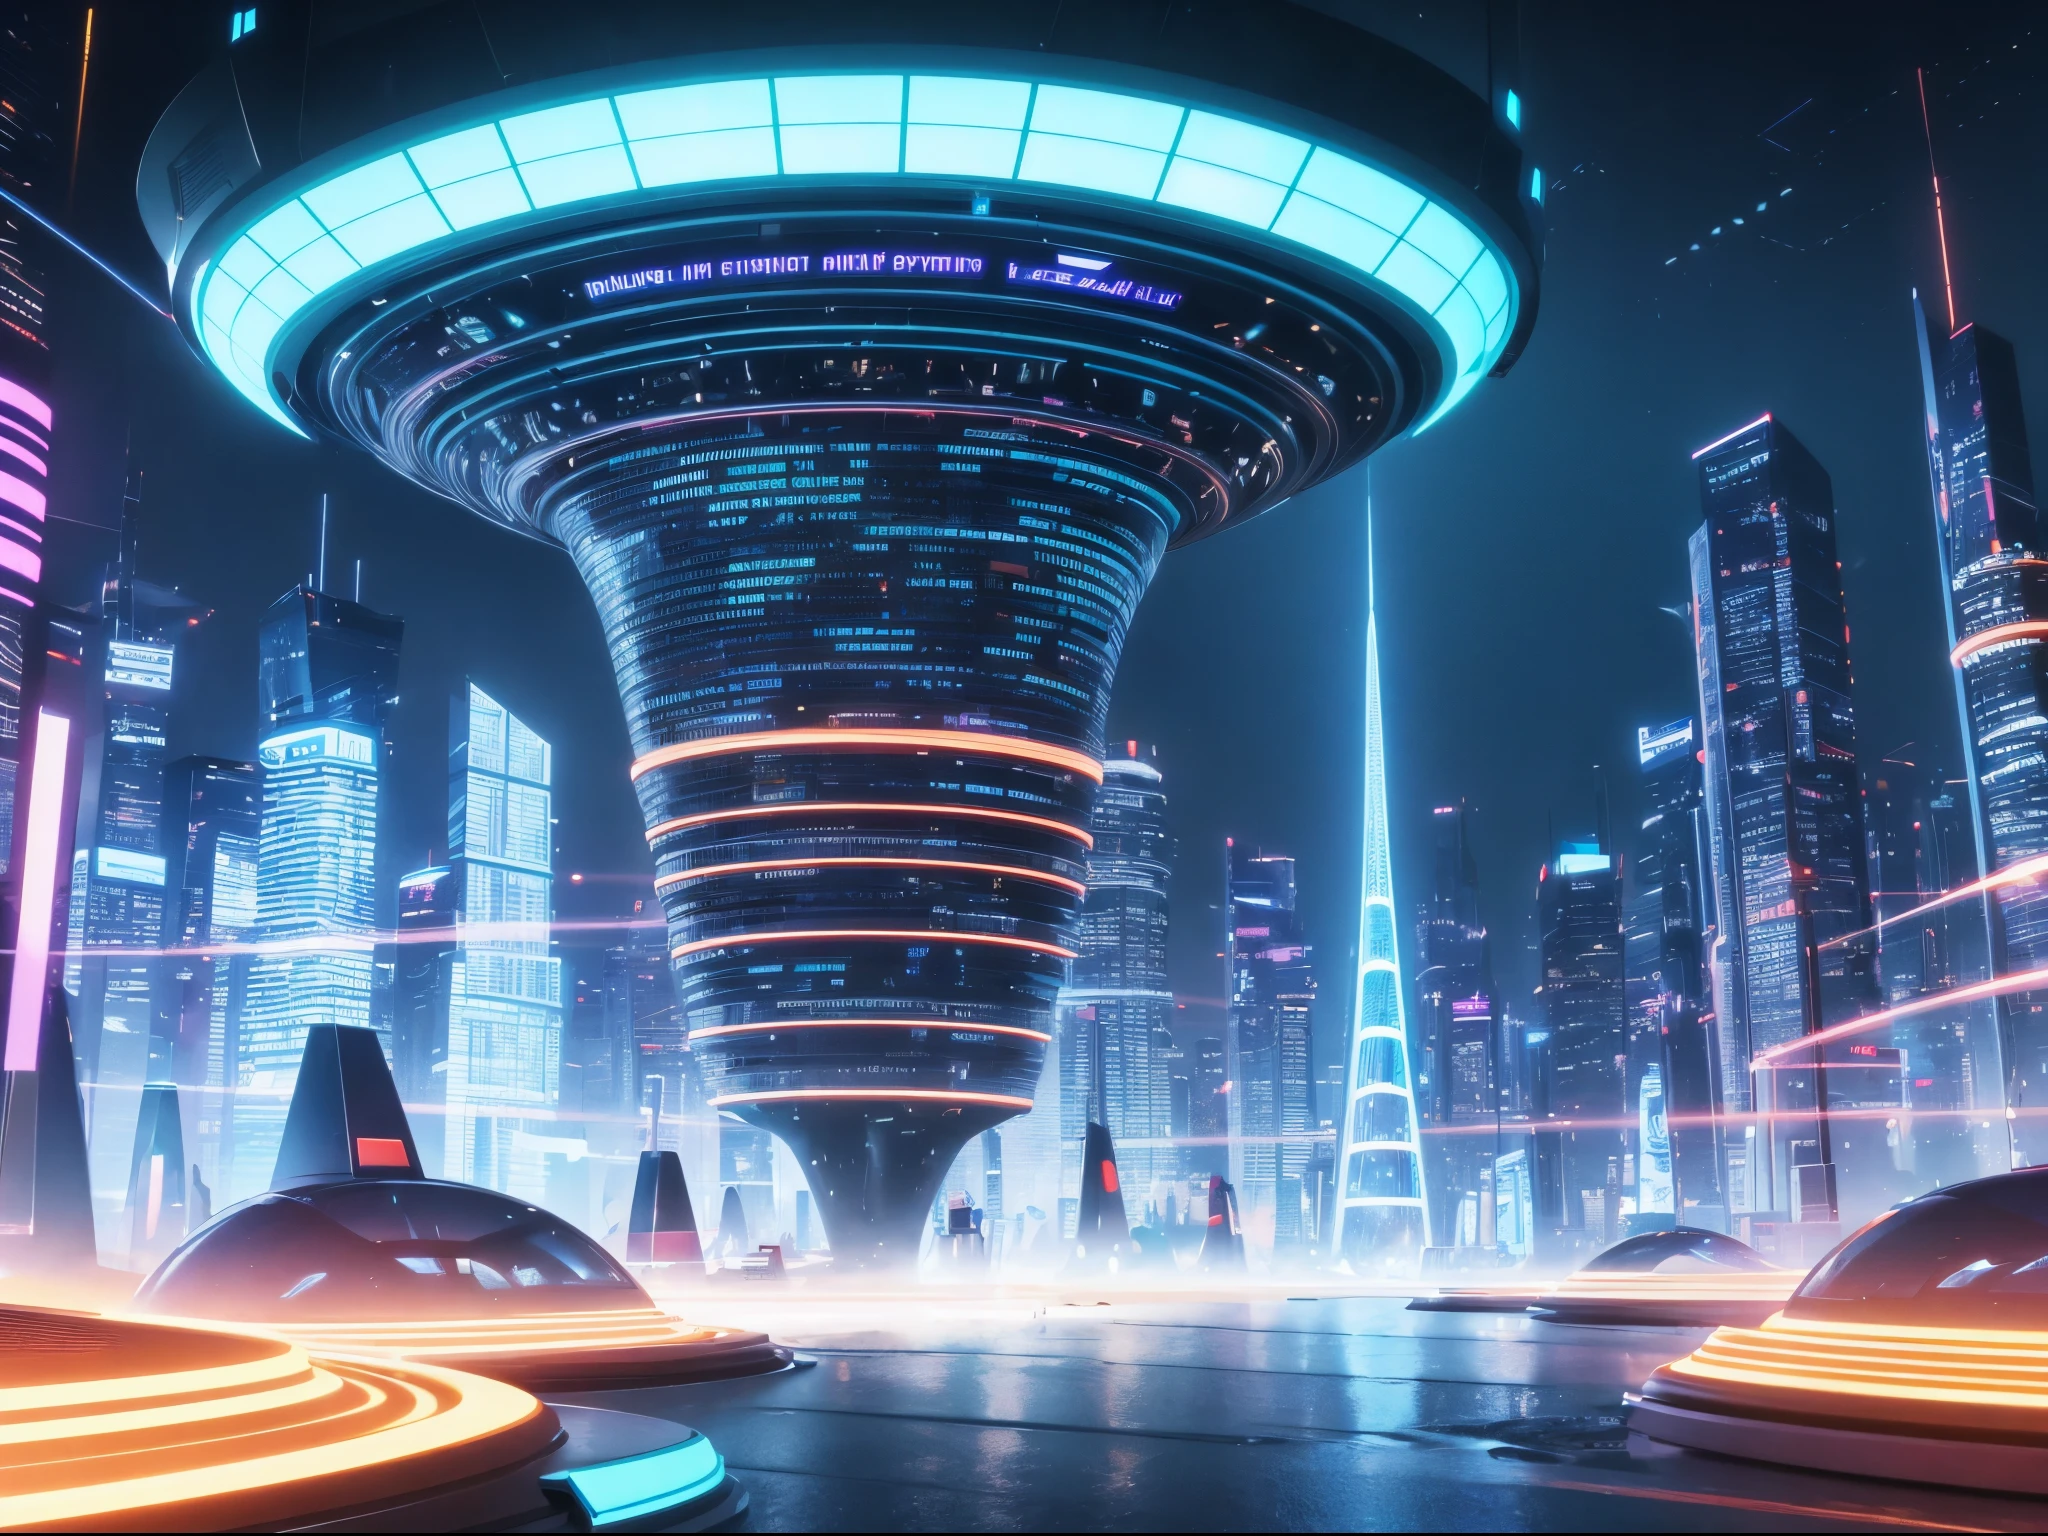 Visualice un paisaje urbano futurista donde la música generada por IA emana de imponentes estructuras cristalinas., creando una sinfonía de luz y sonido que recuerda a los vibrantes paisajes del artista de ciencia ficción Syd Mead.. enorme 